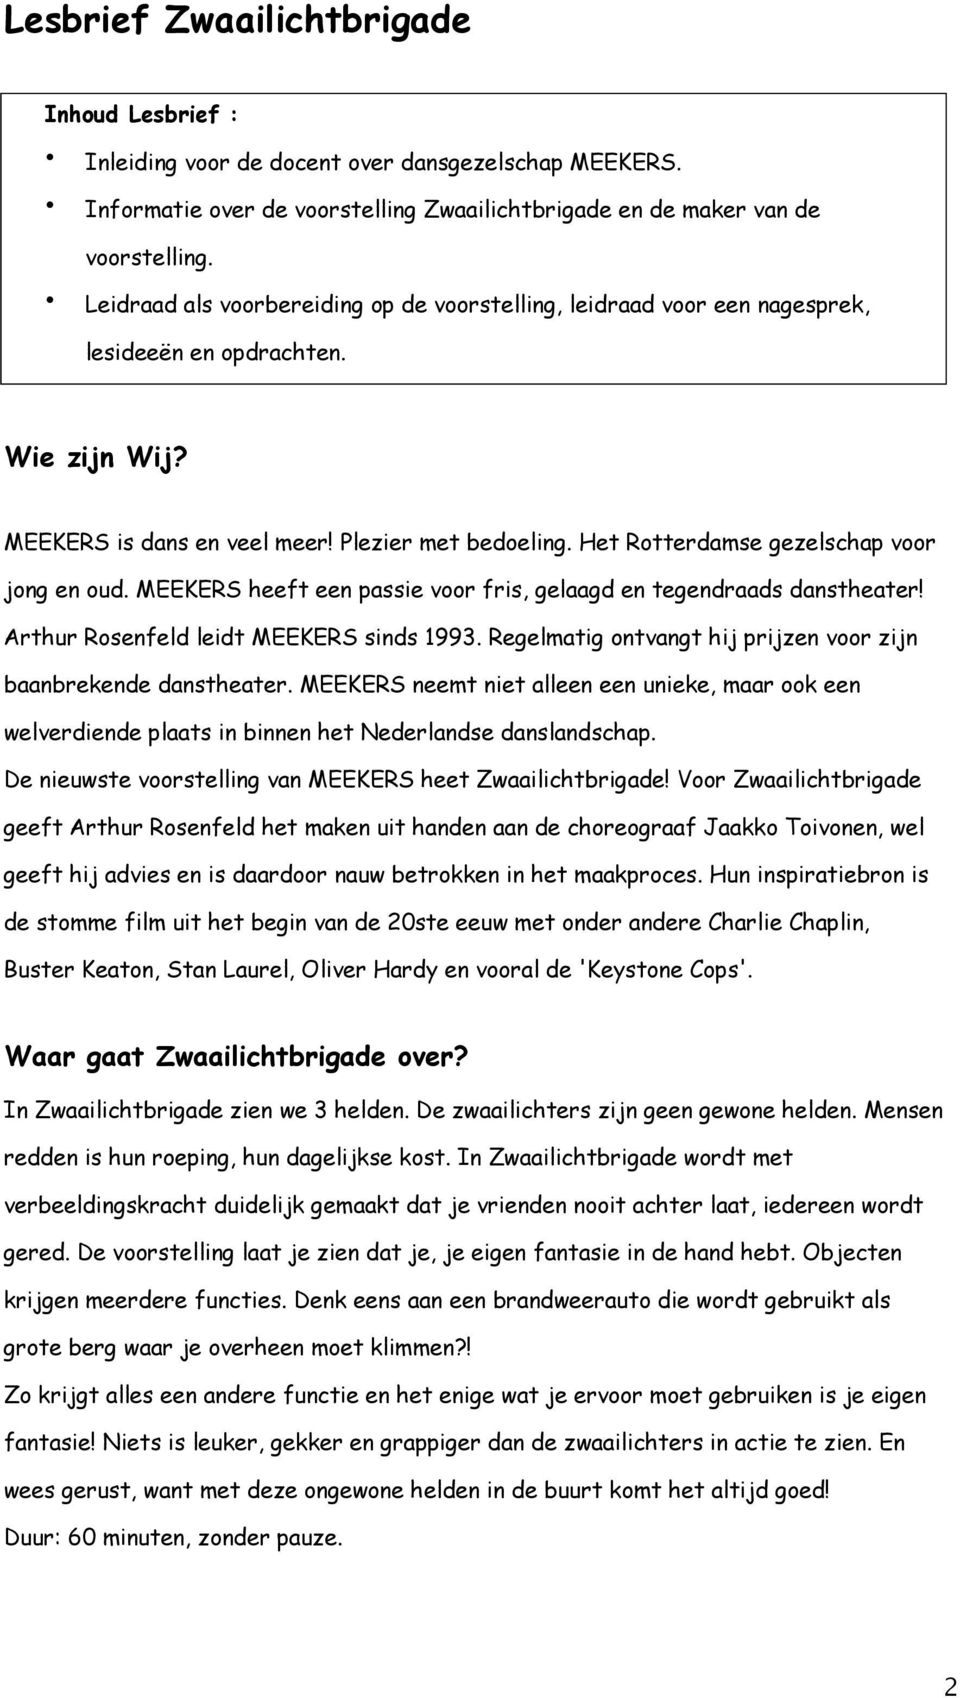 Het Rotterdamse gezelschap voor jong en oud. MEEKERS heeft een passie voor fris, gelaagd en tegendraads danstheater! Arthur Rosenfeld leidt MEEKERS sinds 1993.